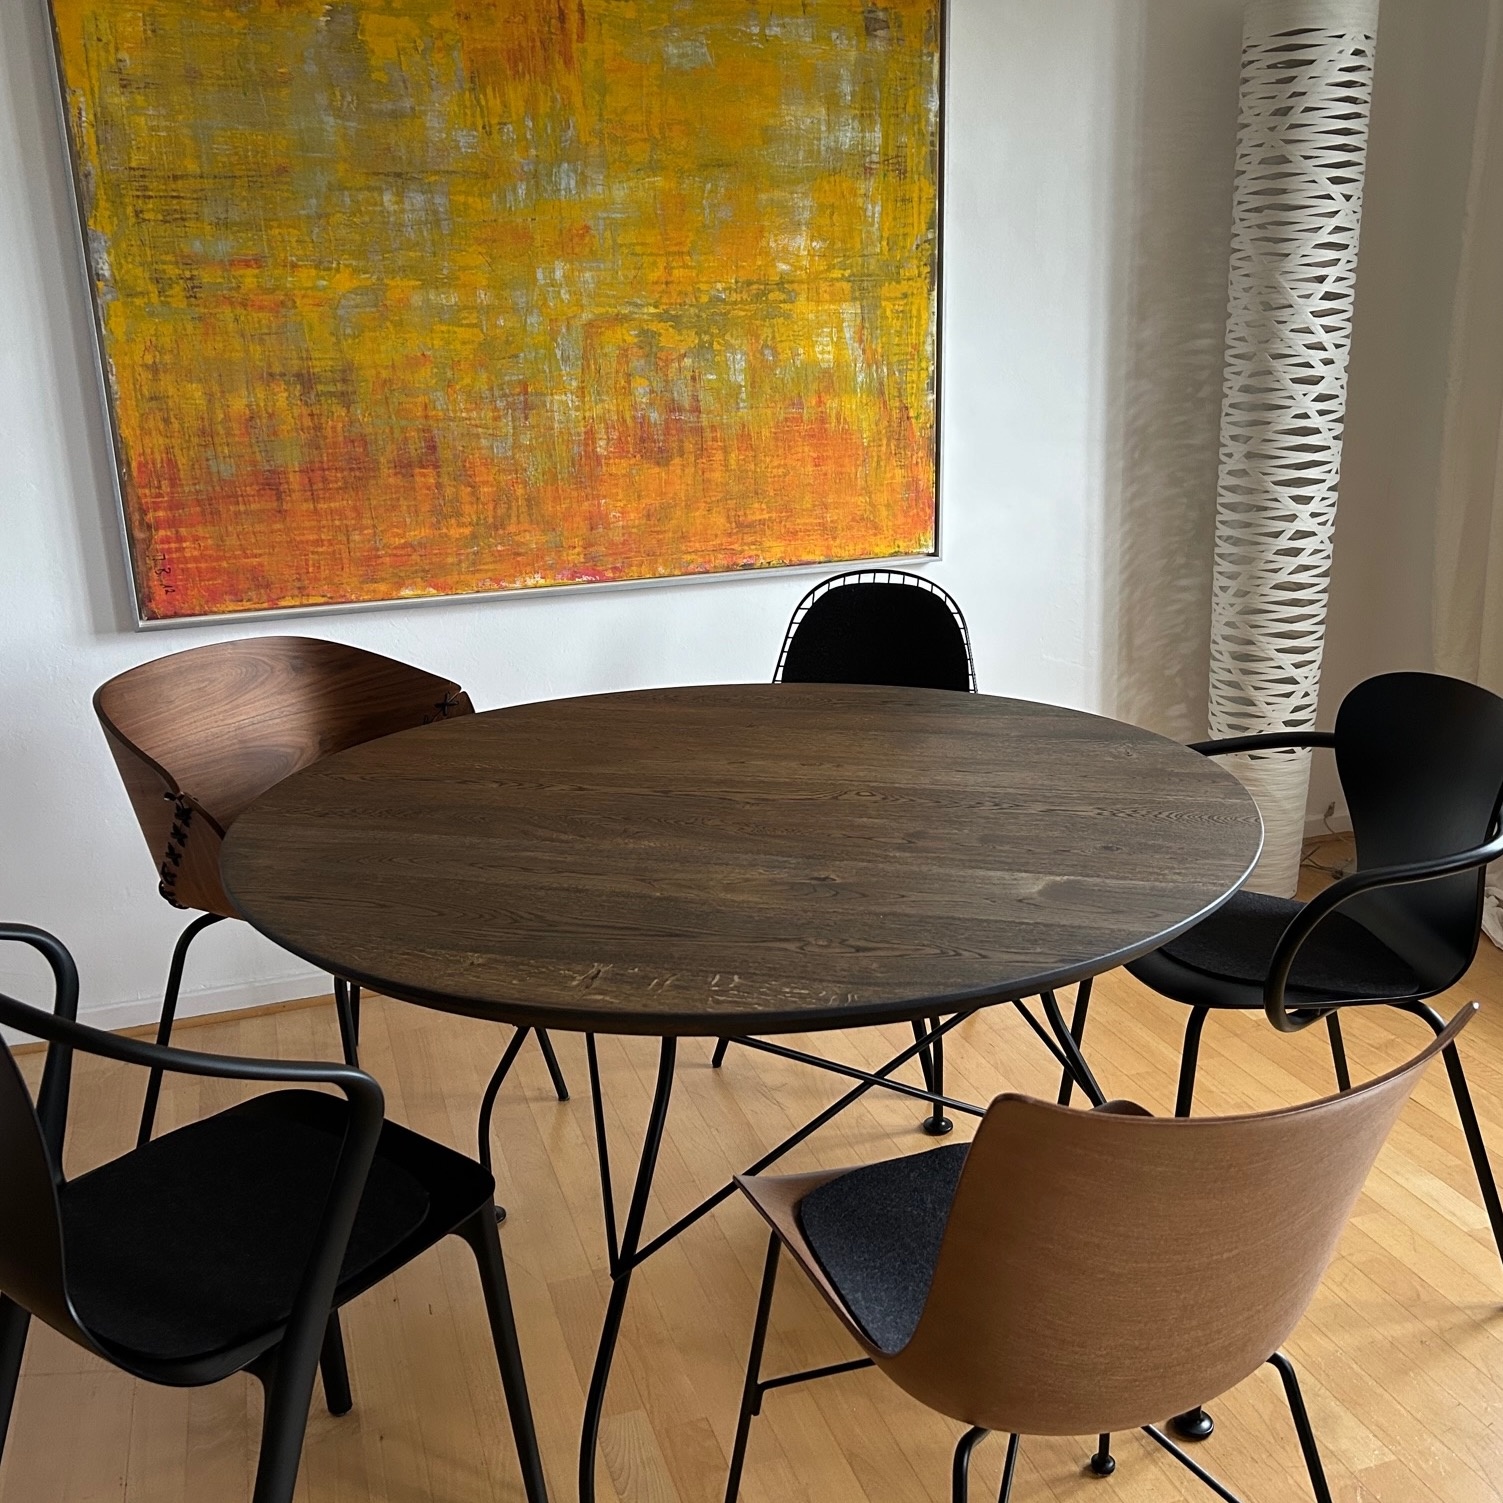  Tischplatte Wildeiche rund - 4 cm dick - mit Schweizer Kante - Asteiche (rustikal) - mit abgeschrägten Kanten - Eiche Tischplatte rund massiv - Verleimt & künstlich getrocknet (HF 8-12%)